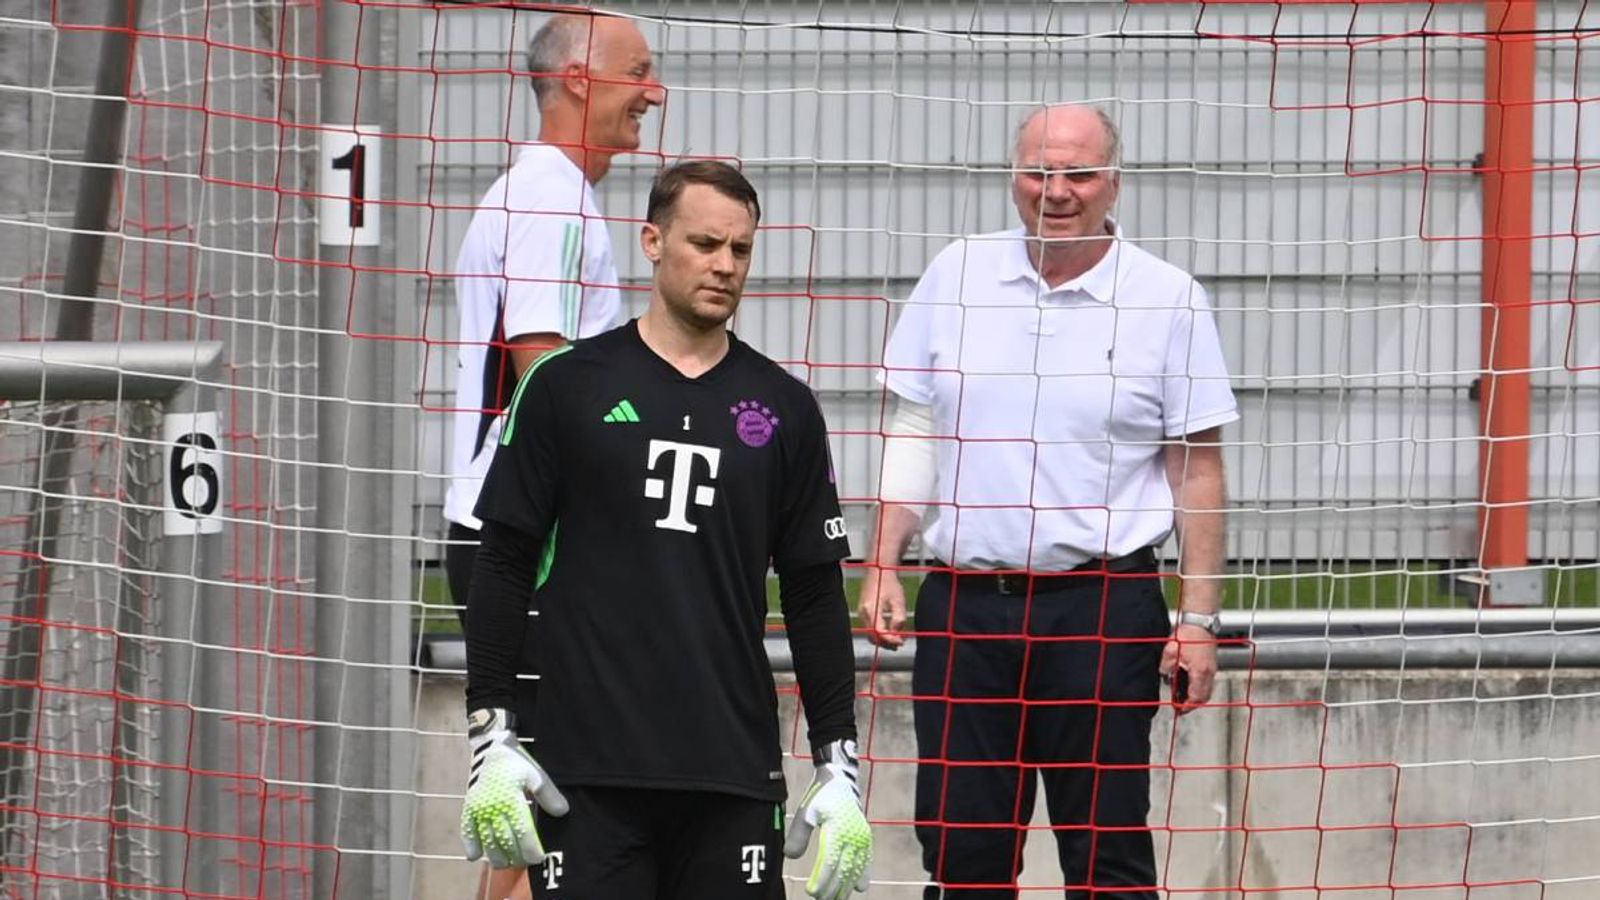 FC Bayern: Manuel Neuer trainiert vor den Augen von Uli Hoeneß | Fußball News | Sky Sport